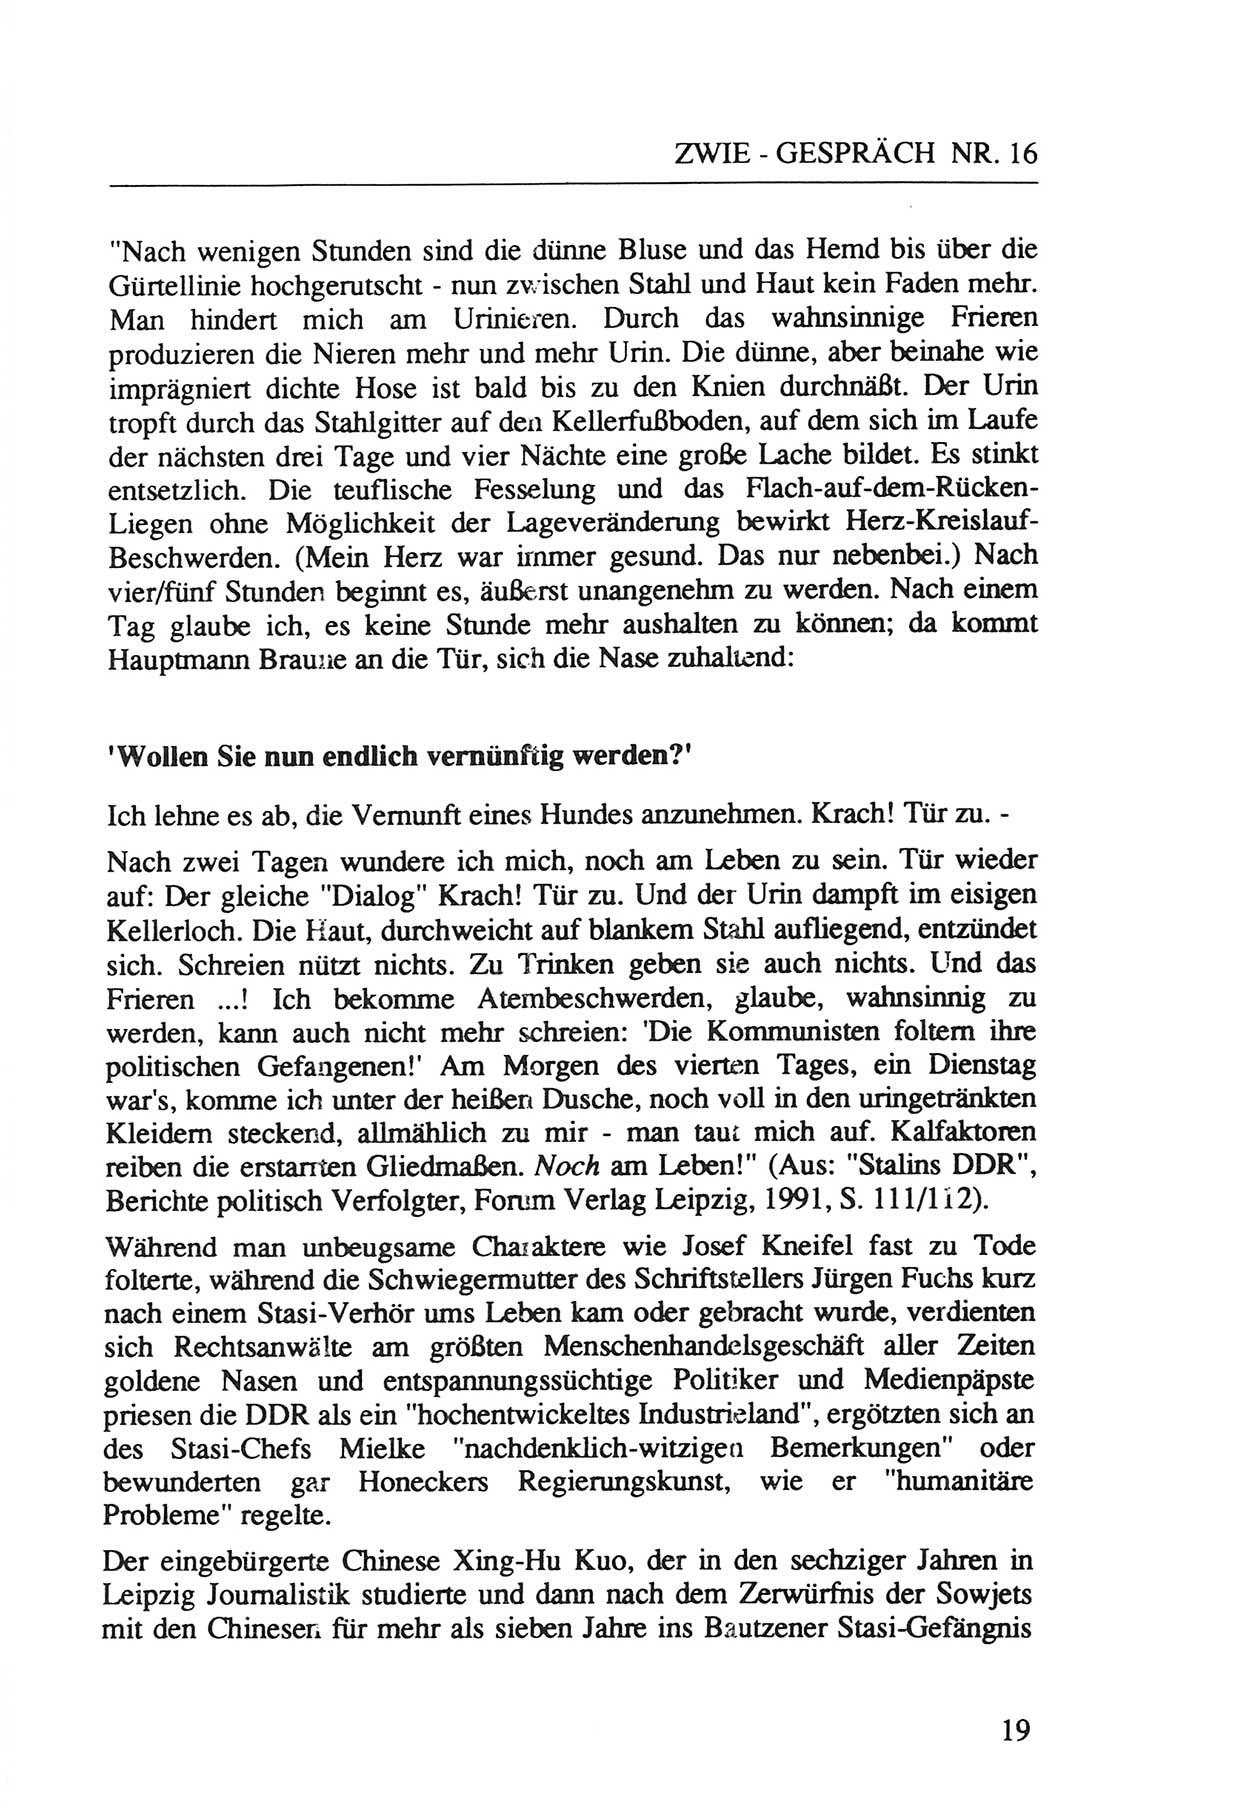 Zwie-Gespräch, Beiträge zur Aufarbeitung der Staatssicherheits-Vergangenheit [Deutsche Demokratische Republik (DDR)], Ausgabe Nr. 16, Berlin 1993, Seite 19 (Zwie-Gespr. Ausg. 16 1993, S. 19)